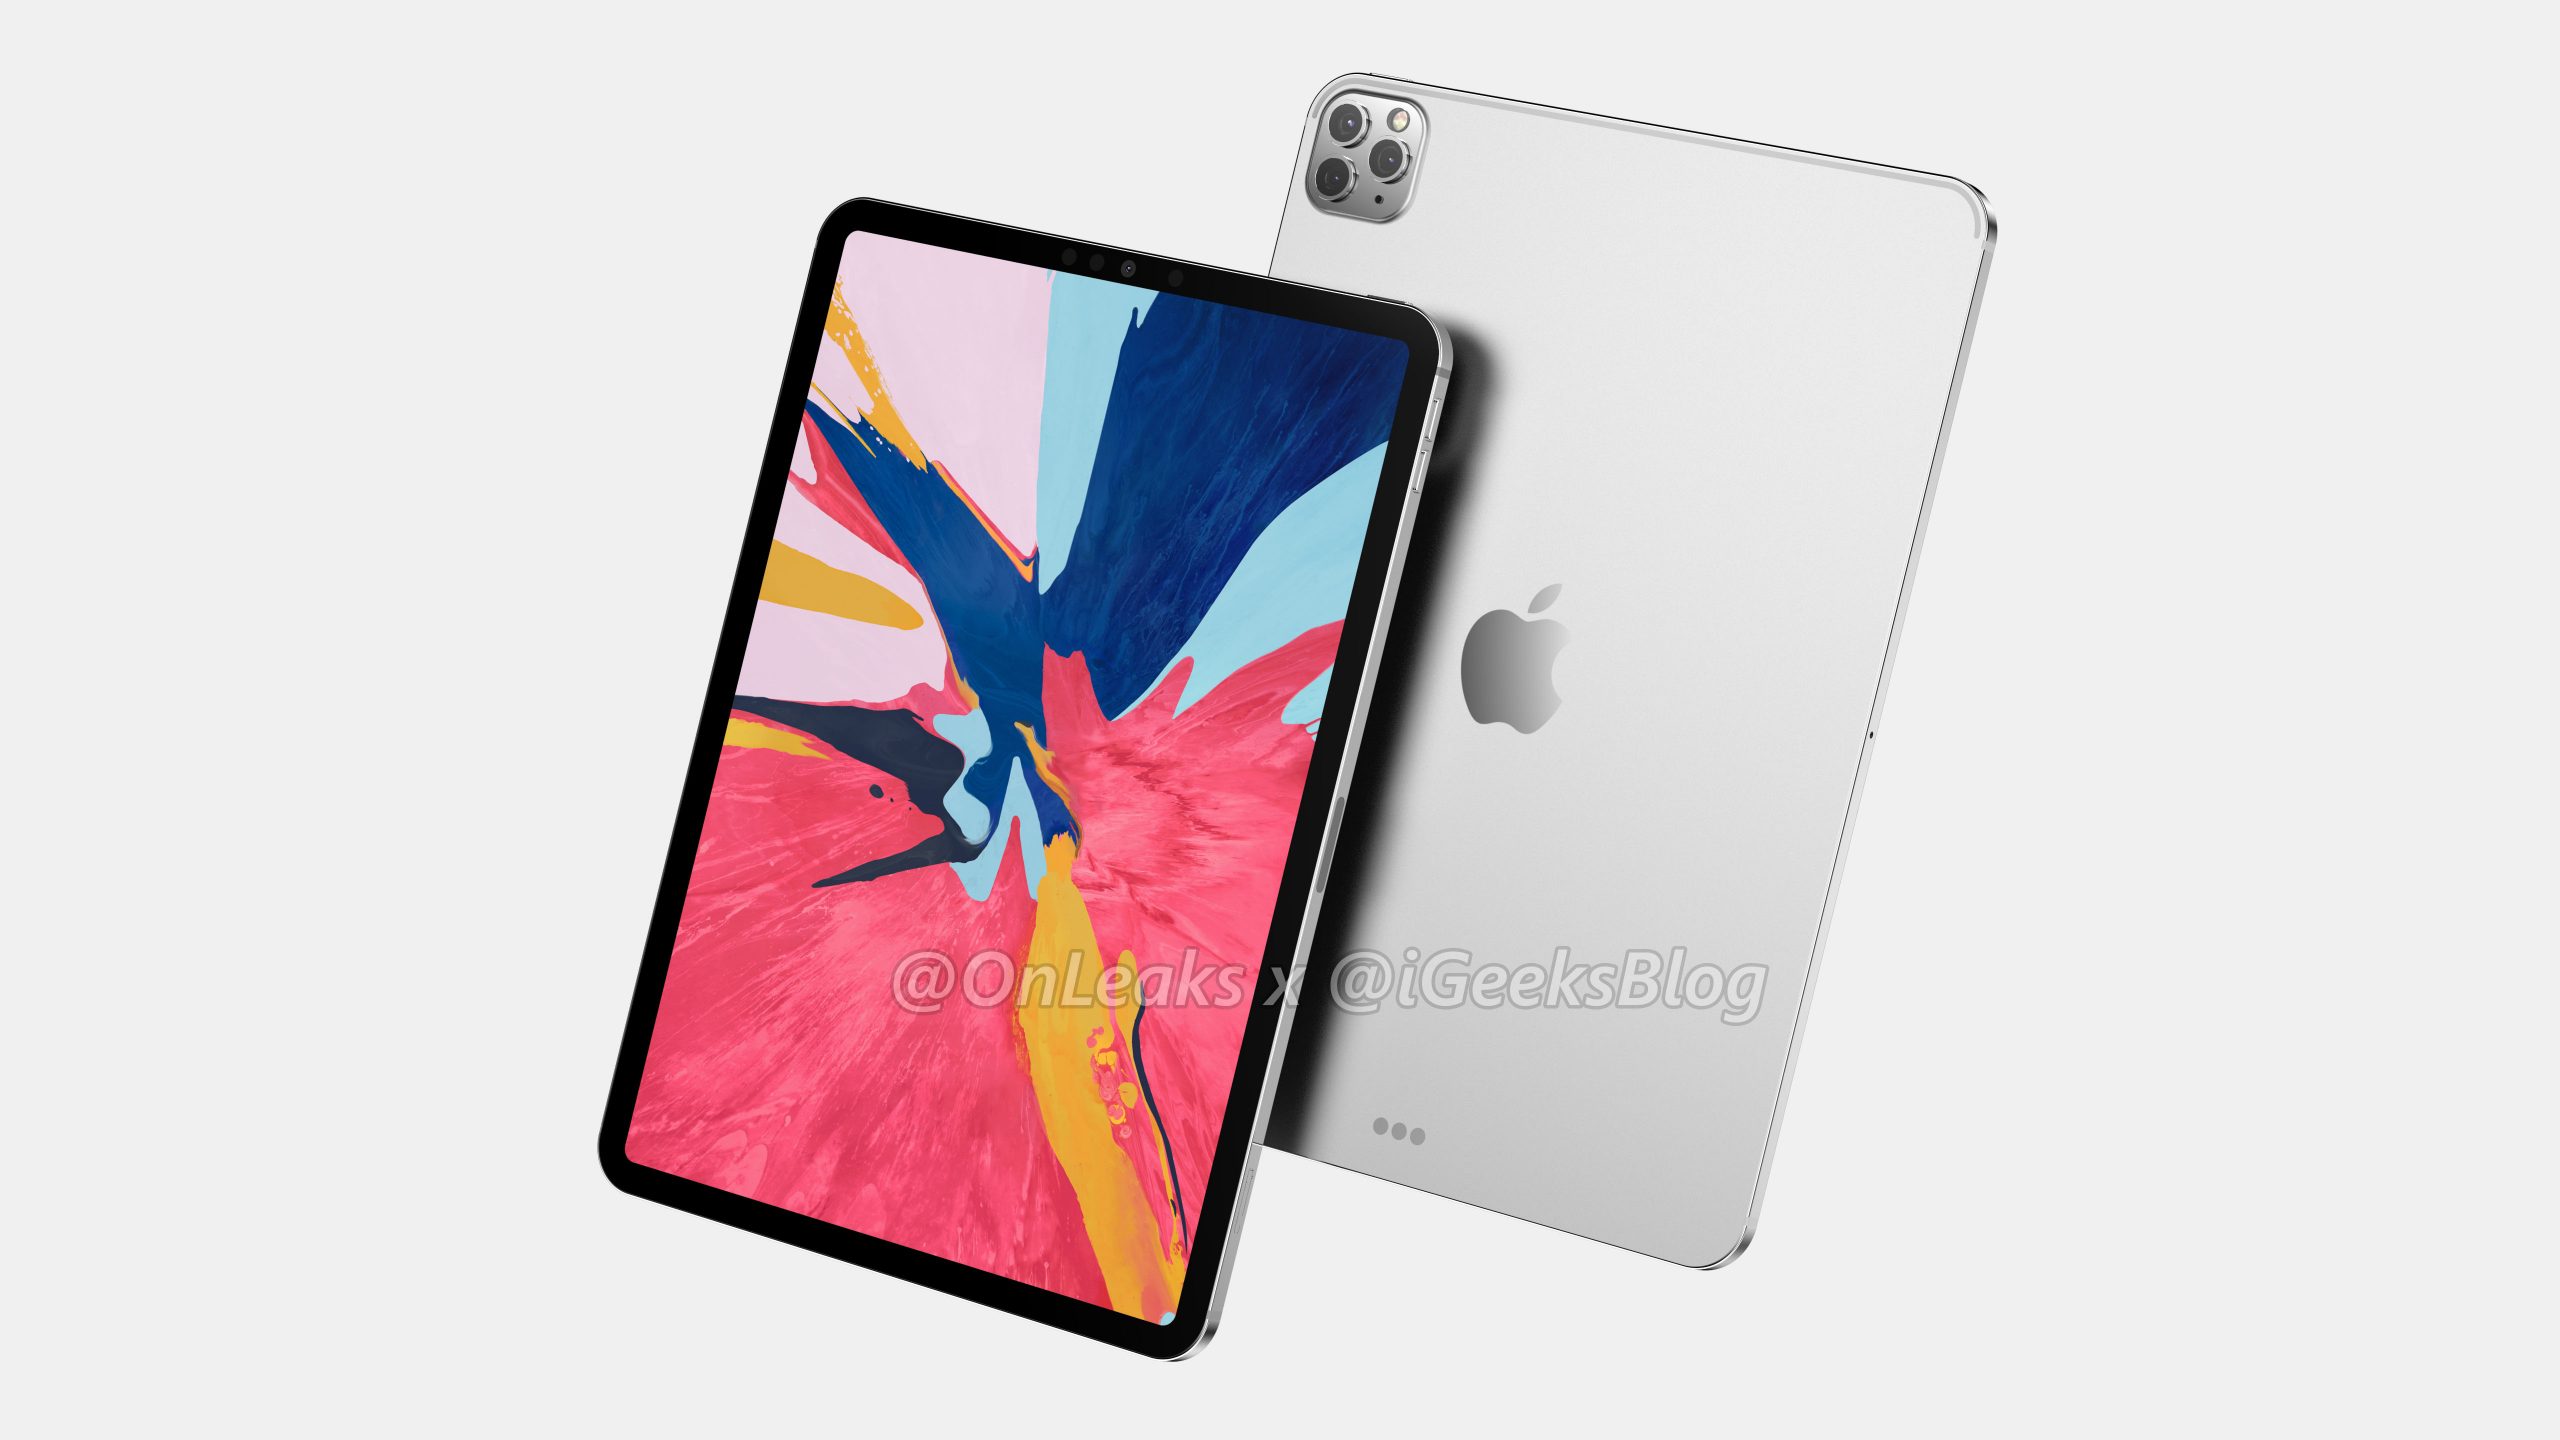 Apple nowy iPad Pro 2020 rendery aparat jak iPhone 11 Pro tablety specyfikacja dane techniczne kiedy premiera